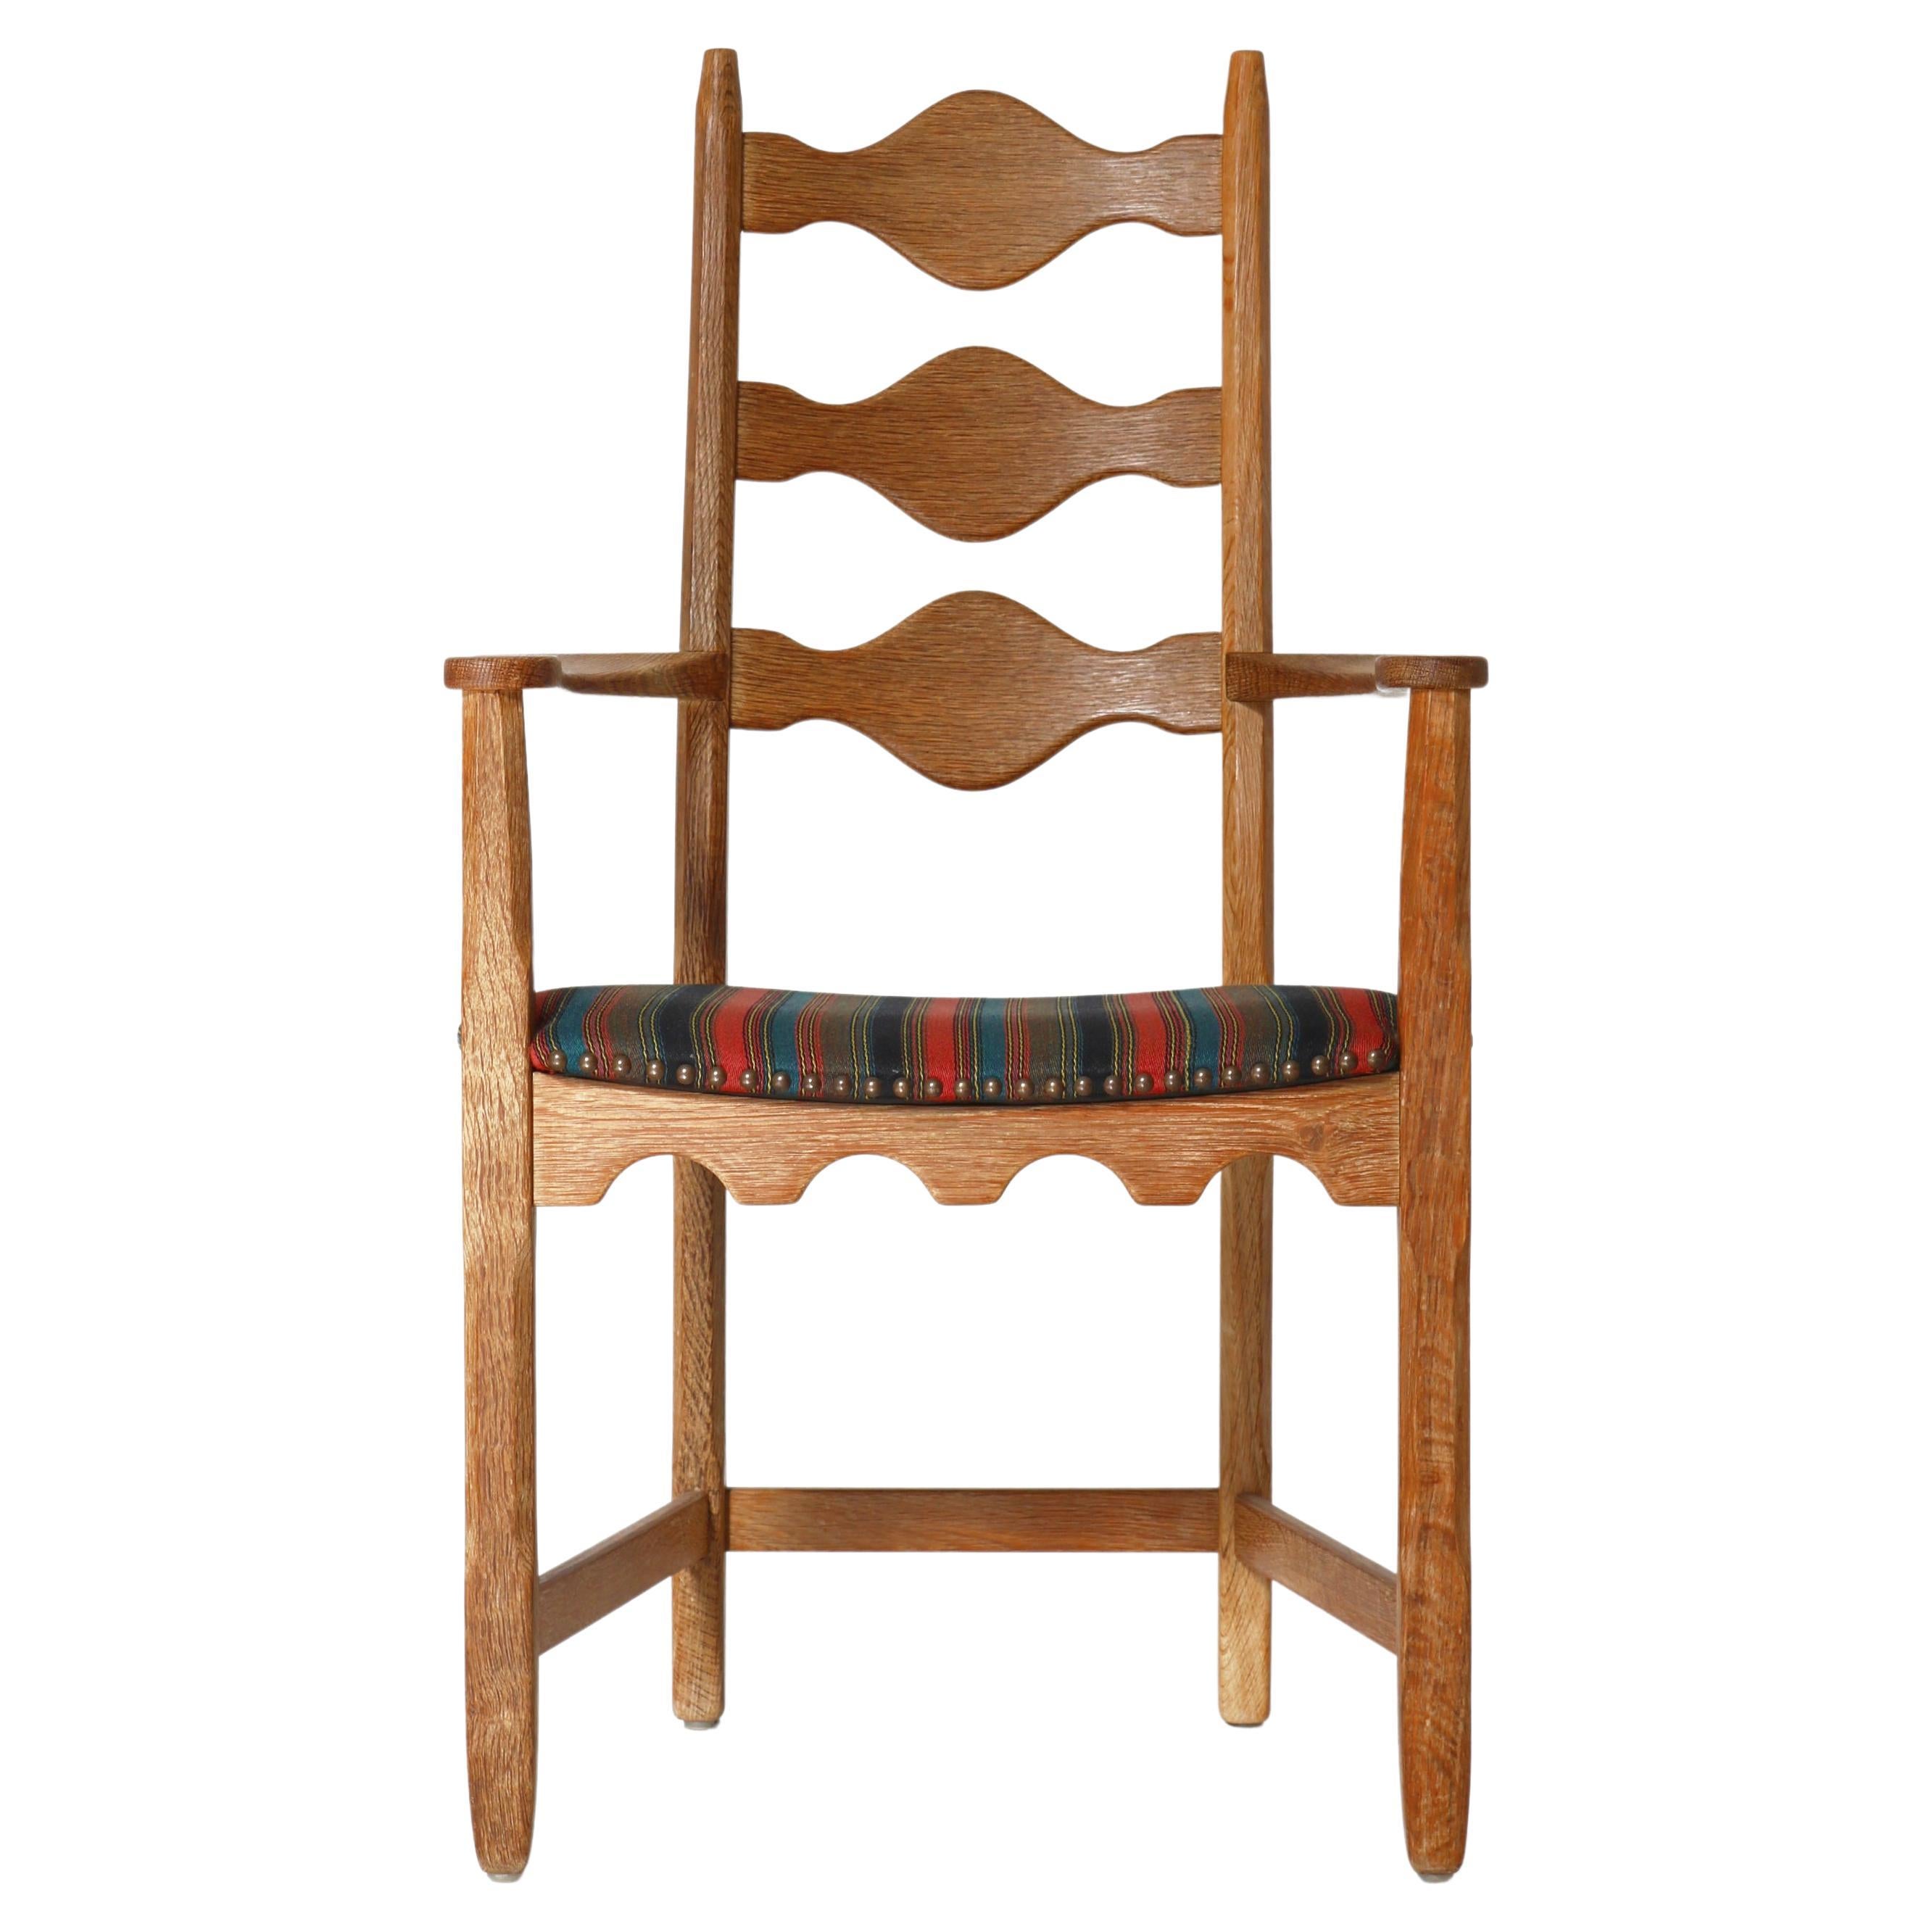 Chaise à bras des années 1960 en chêne et tissu de laine par Henry Kjærnulff, moderne danois